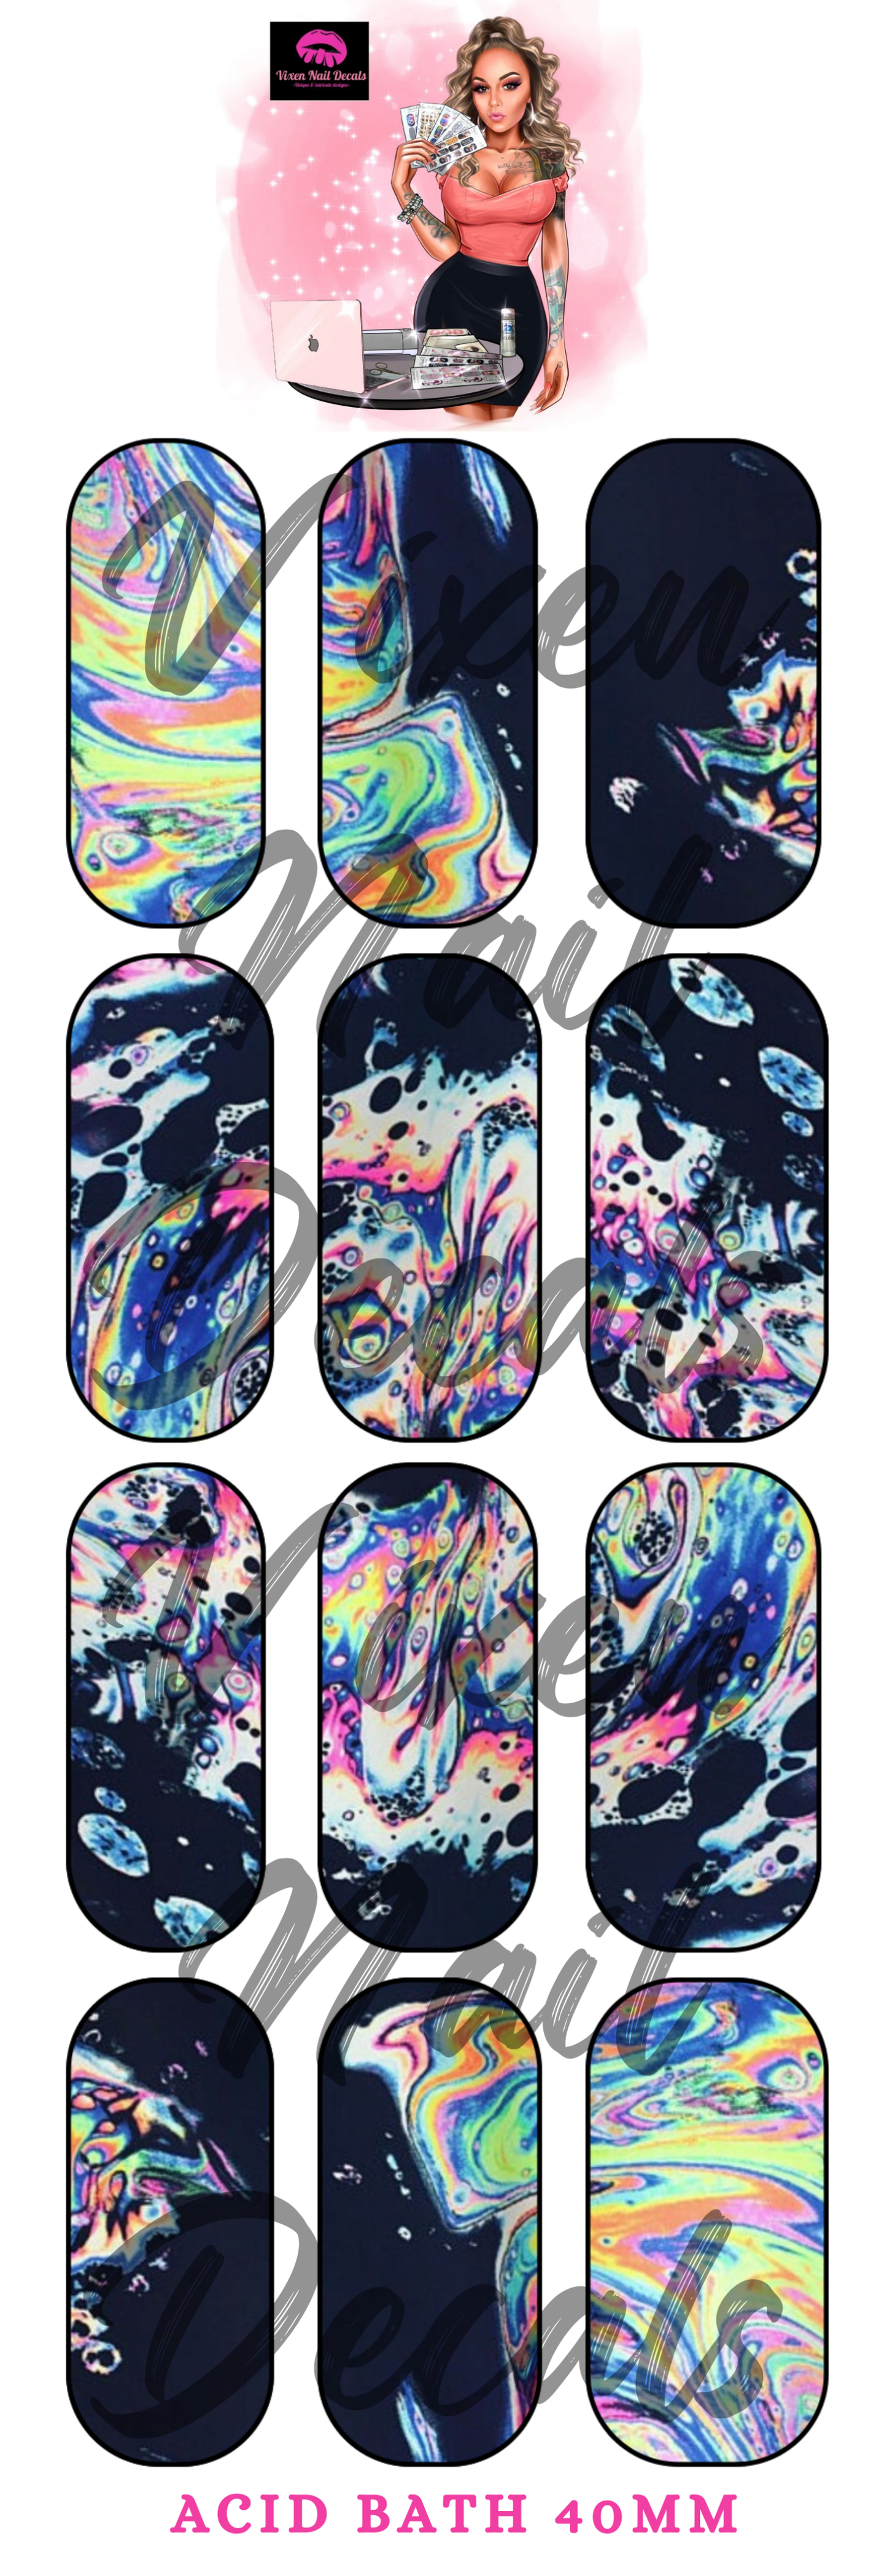 Acid Bath Wash Waterslide Nail Decals - Nail Wraps - Nail Designs - Nail Art